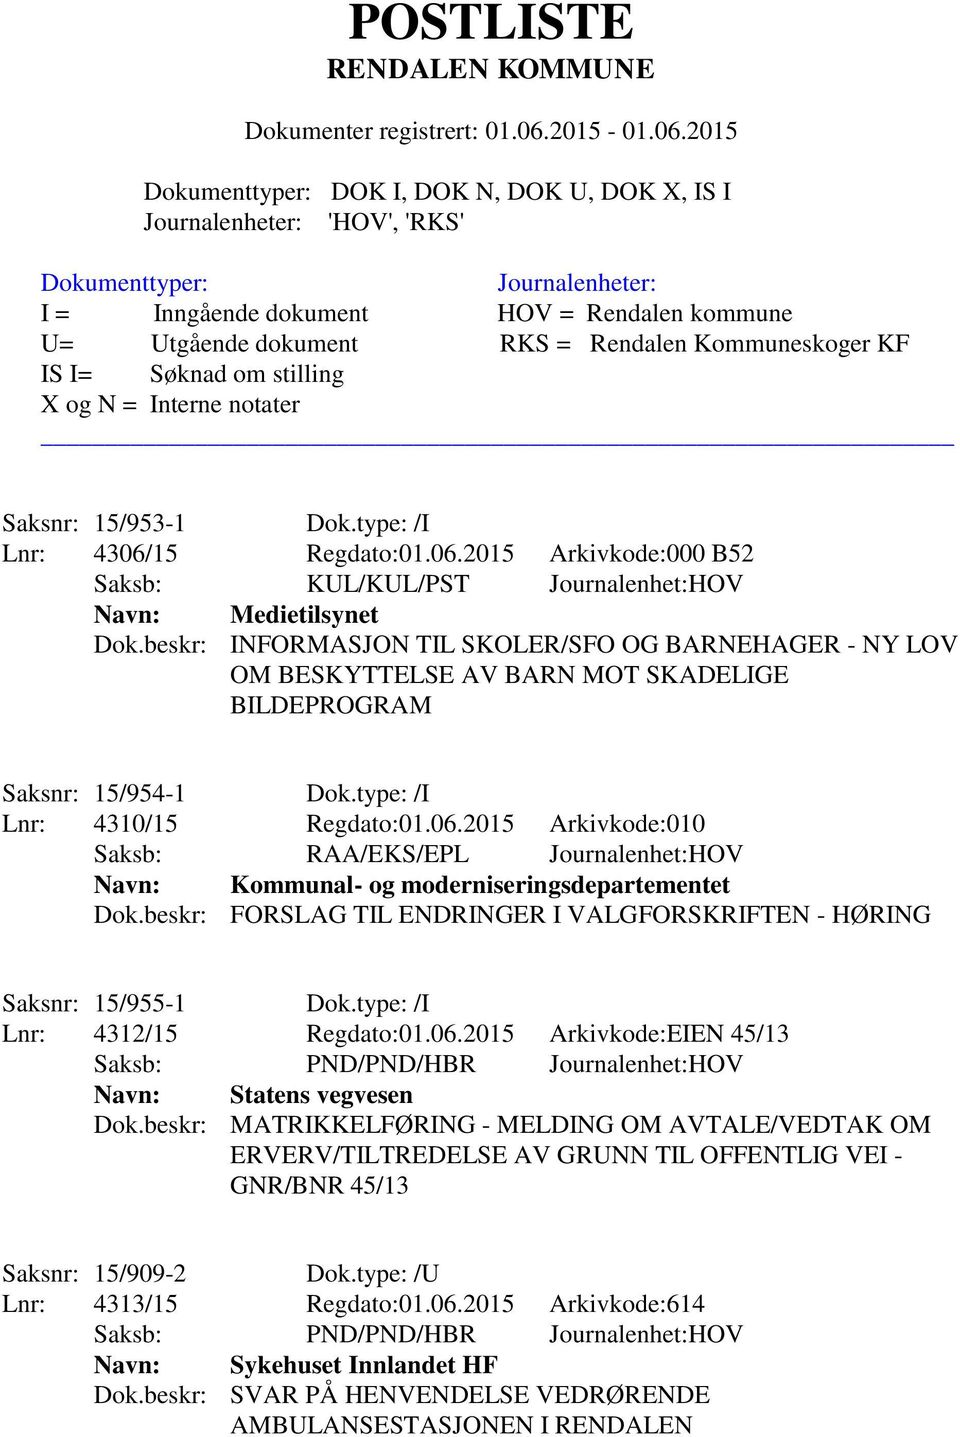 2015 Arkivkode:010 Saksb: RAA/EKS/EPL Journalenhet:HOV Navn: Kommunal- og moderniseringsdepartementet Dok.beskr: FORSLAG TIL ENDRINGER I VALGFORSKRIFTEN - HØRING Saksnr: 15/955-1 Dok.